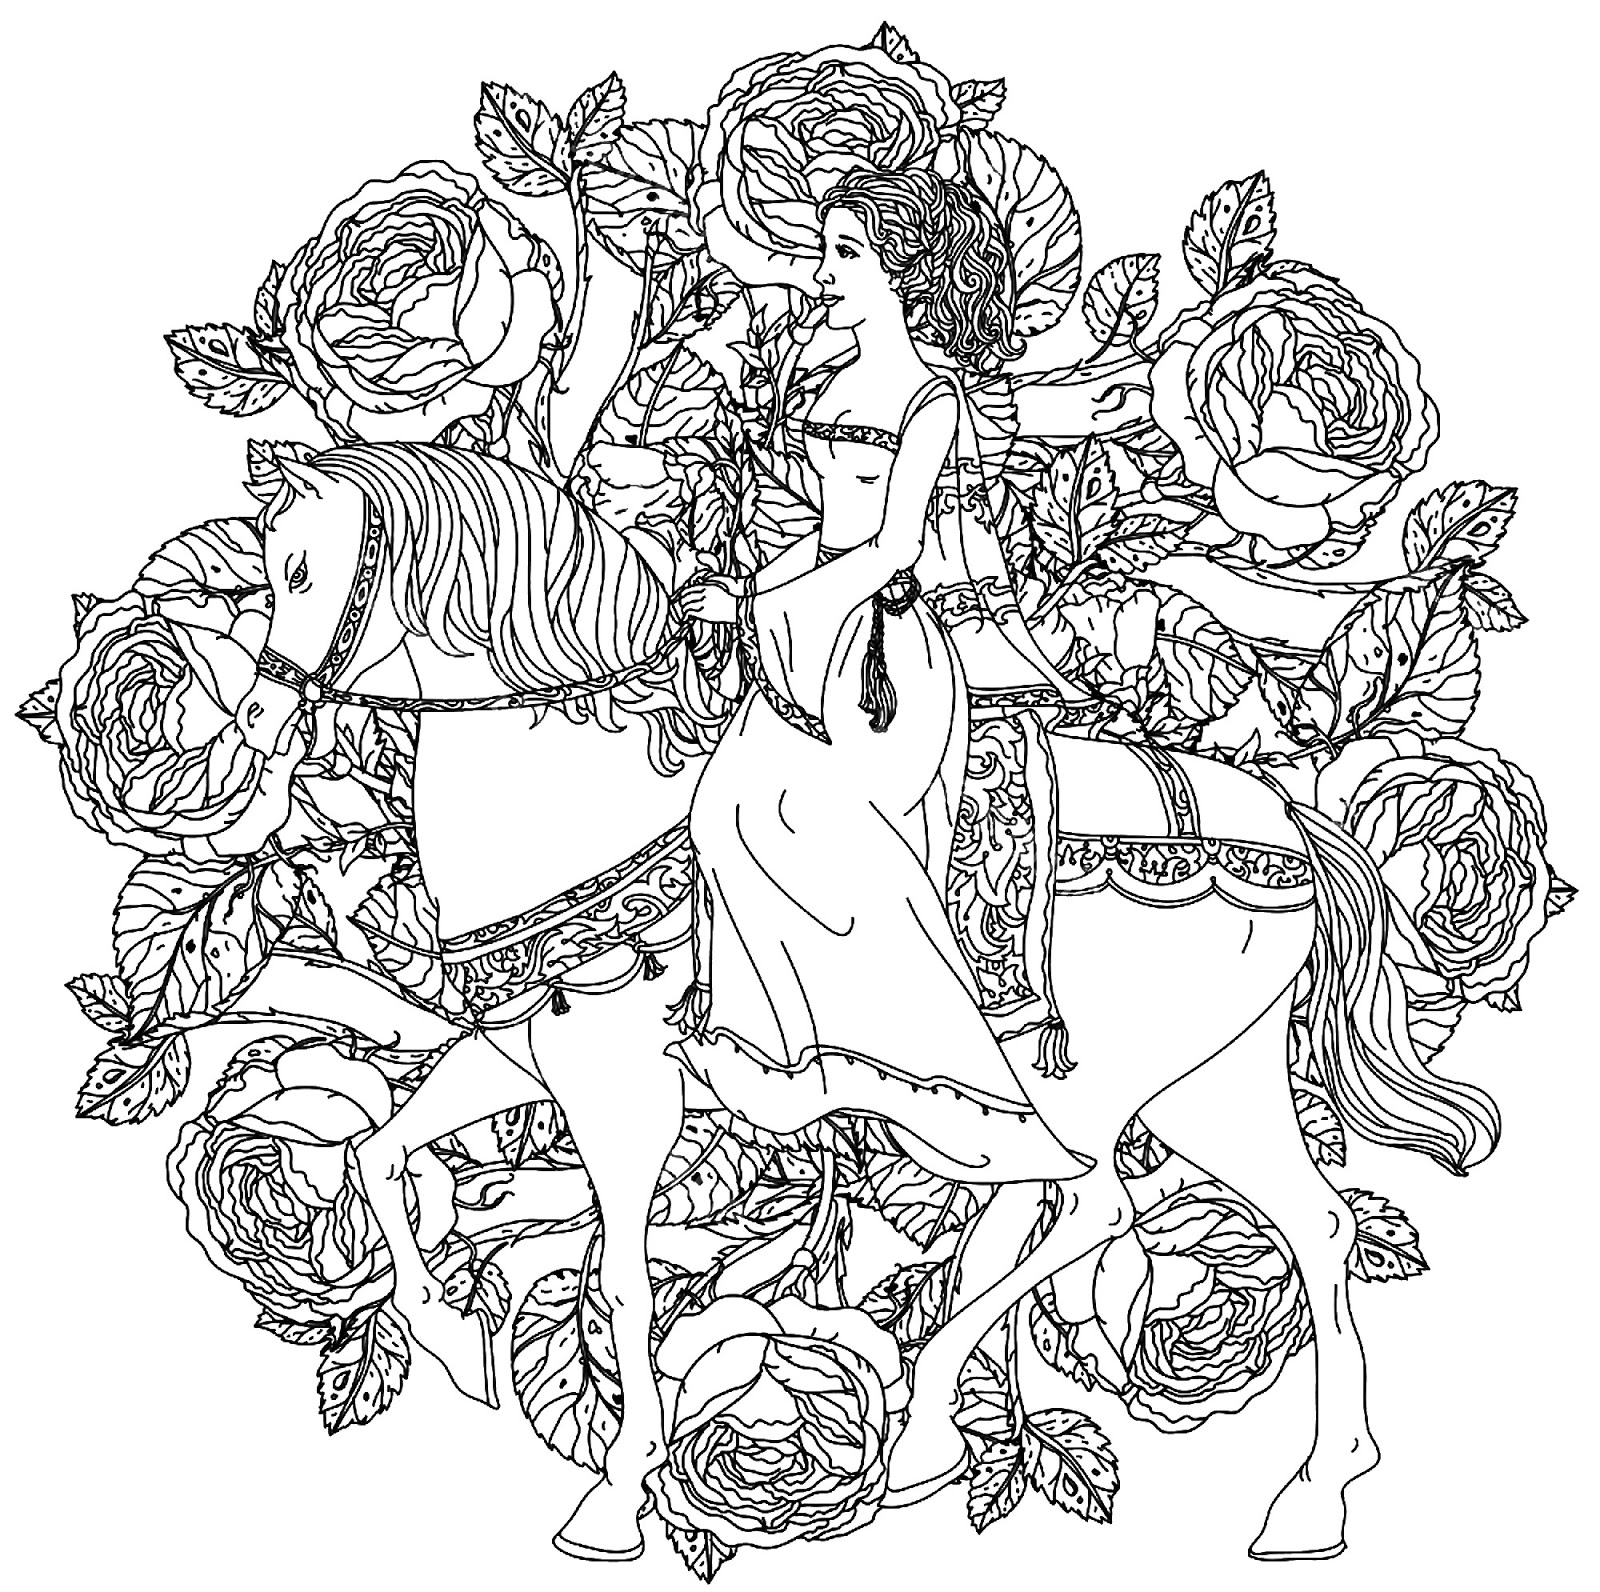 Tranh tô màu cô gái trên lưng ngựa trong vườn hồng